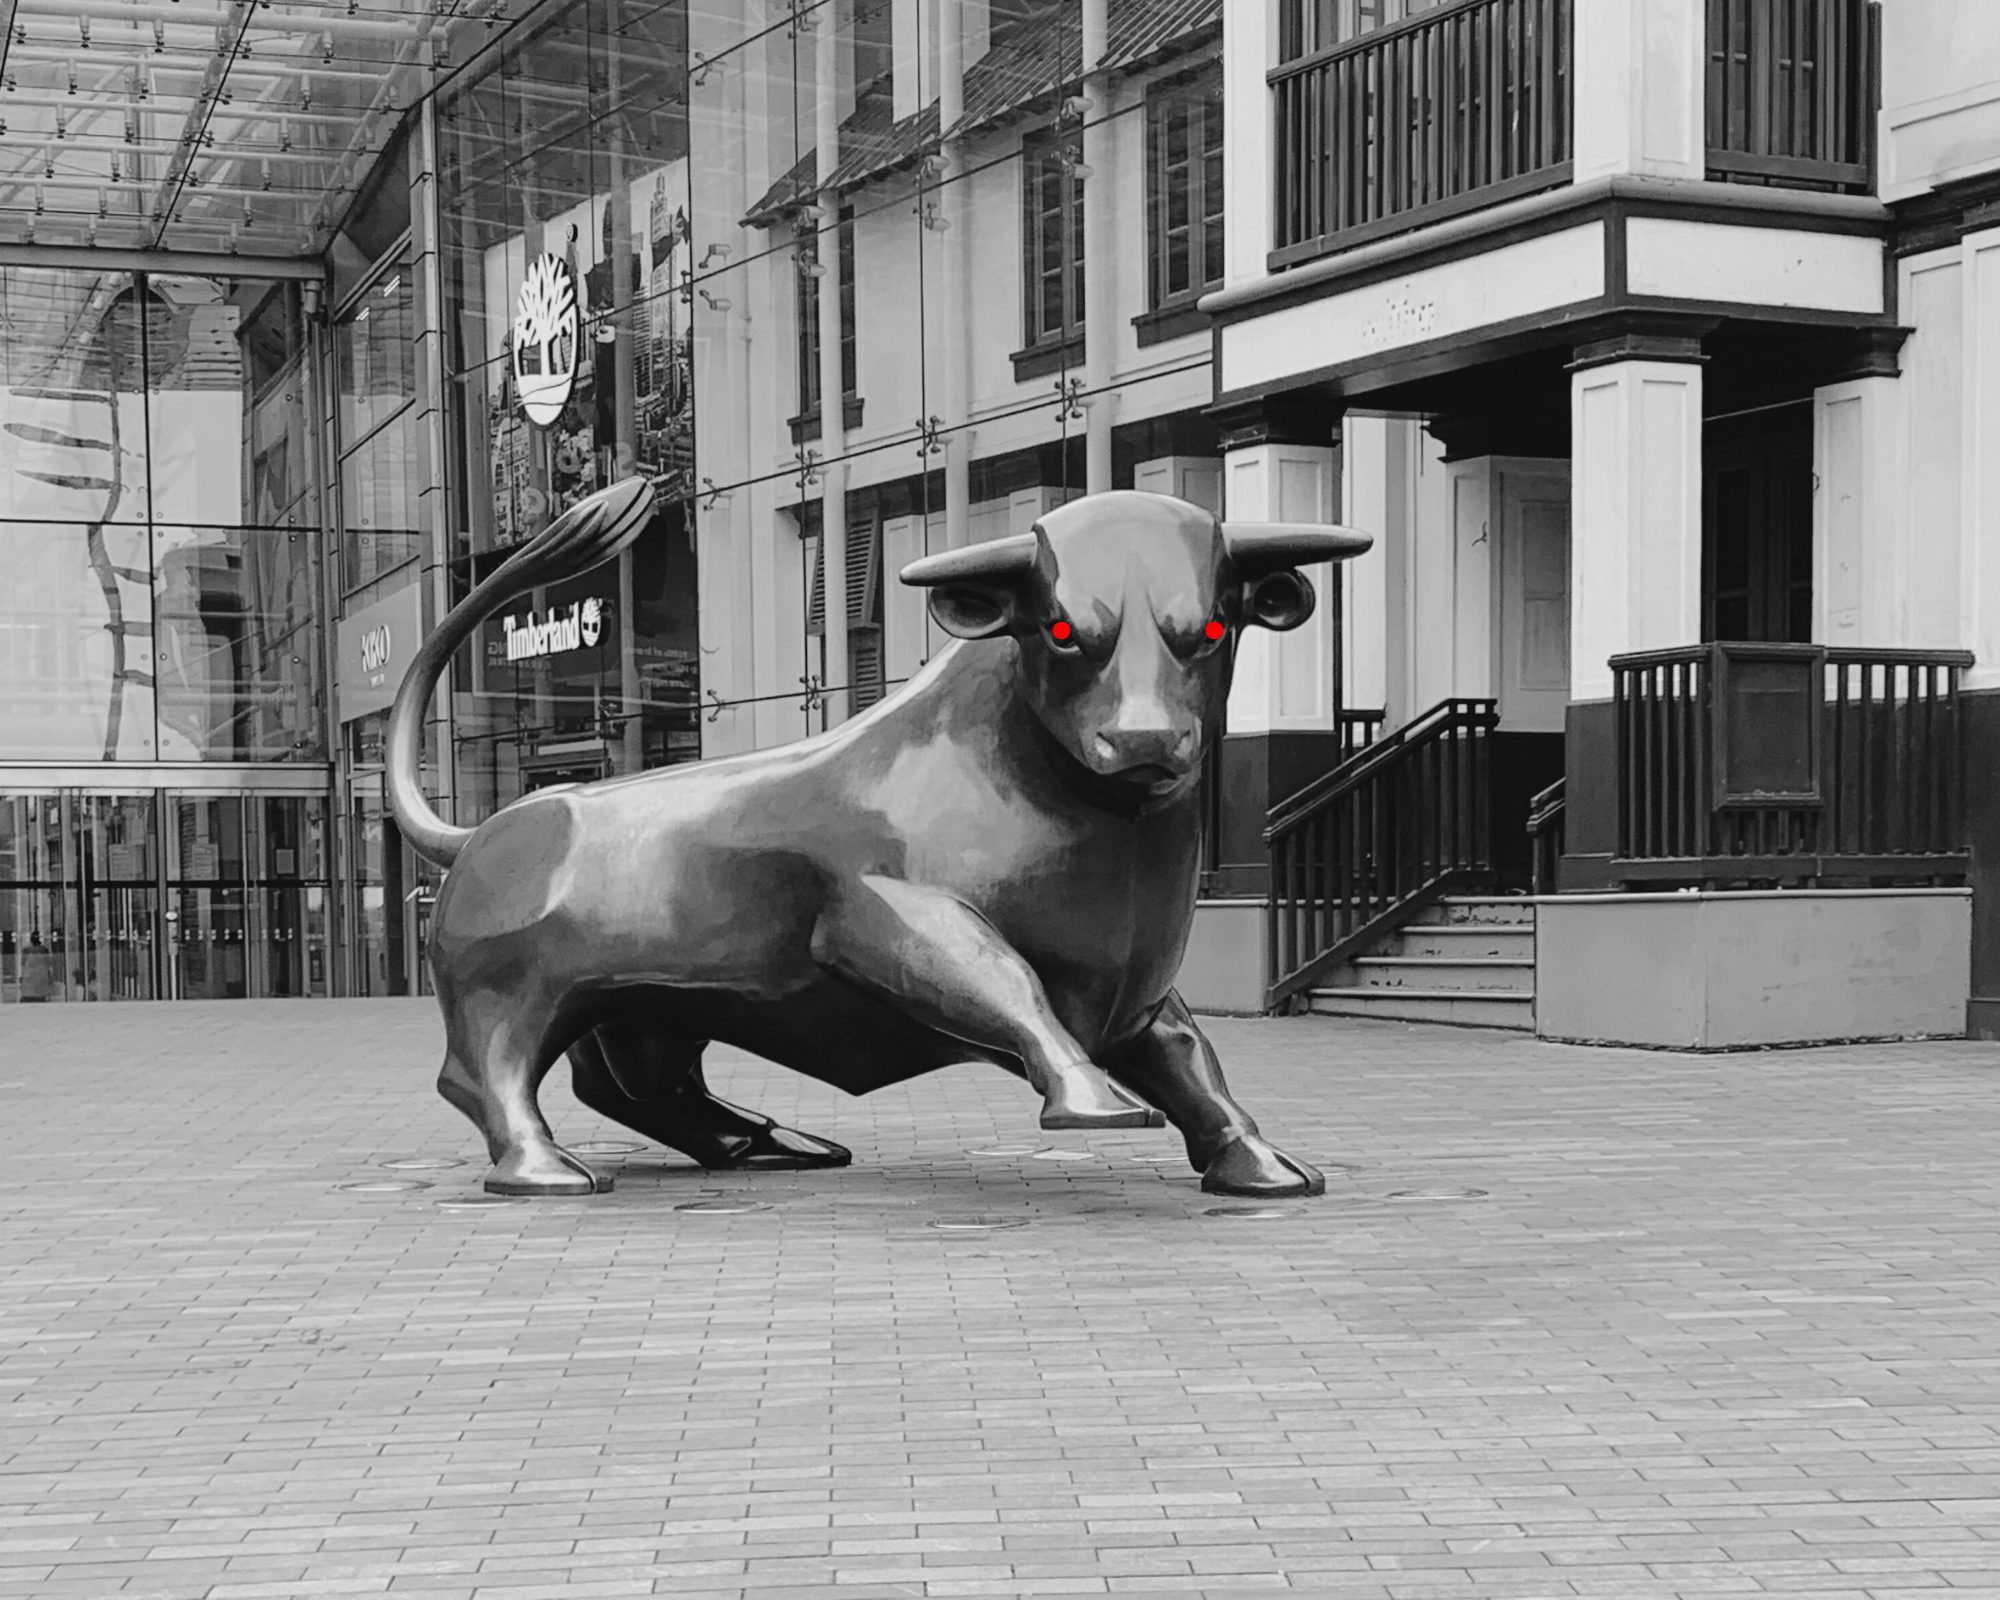 Haunted Birmingham - Haunted Bull in Birmingham